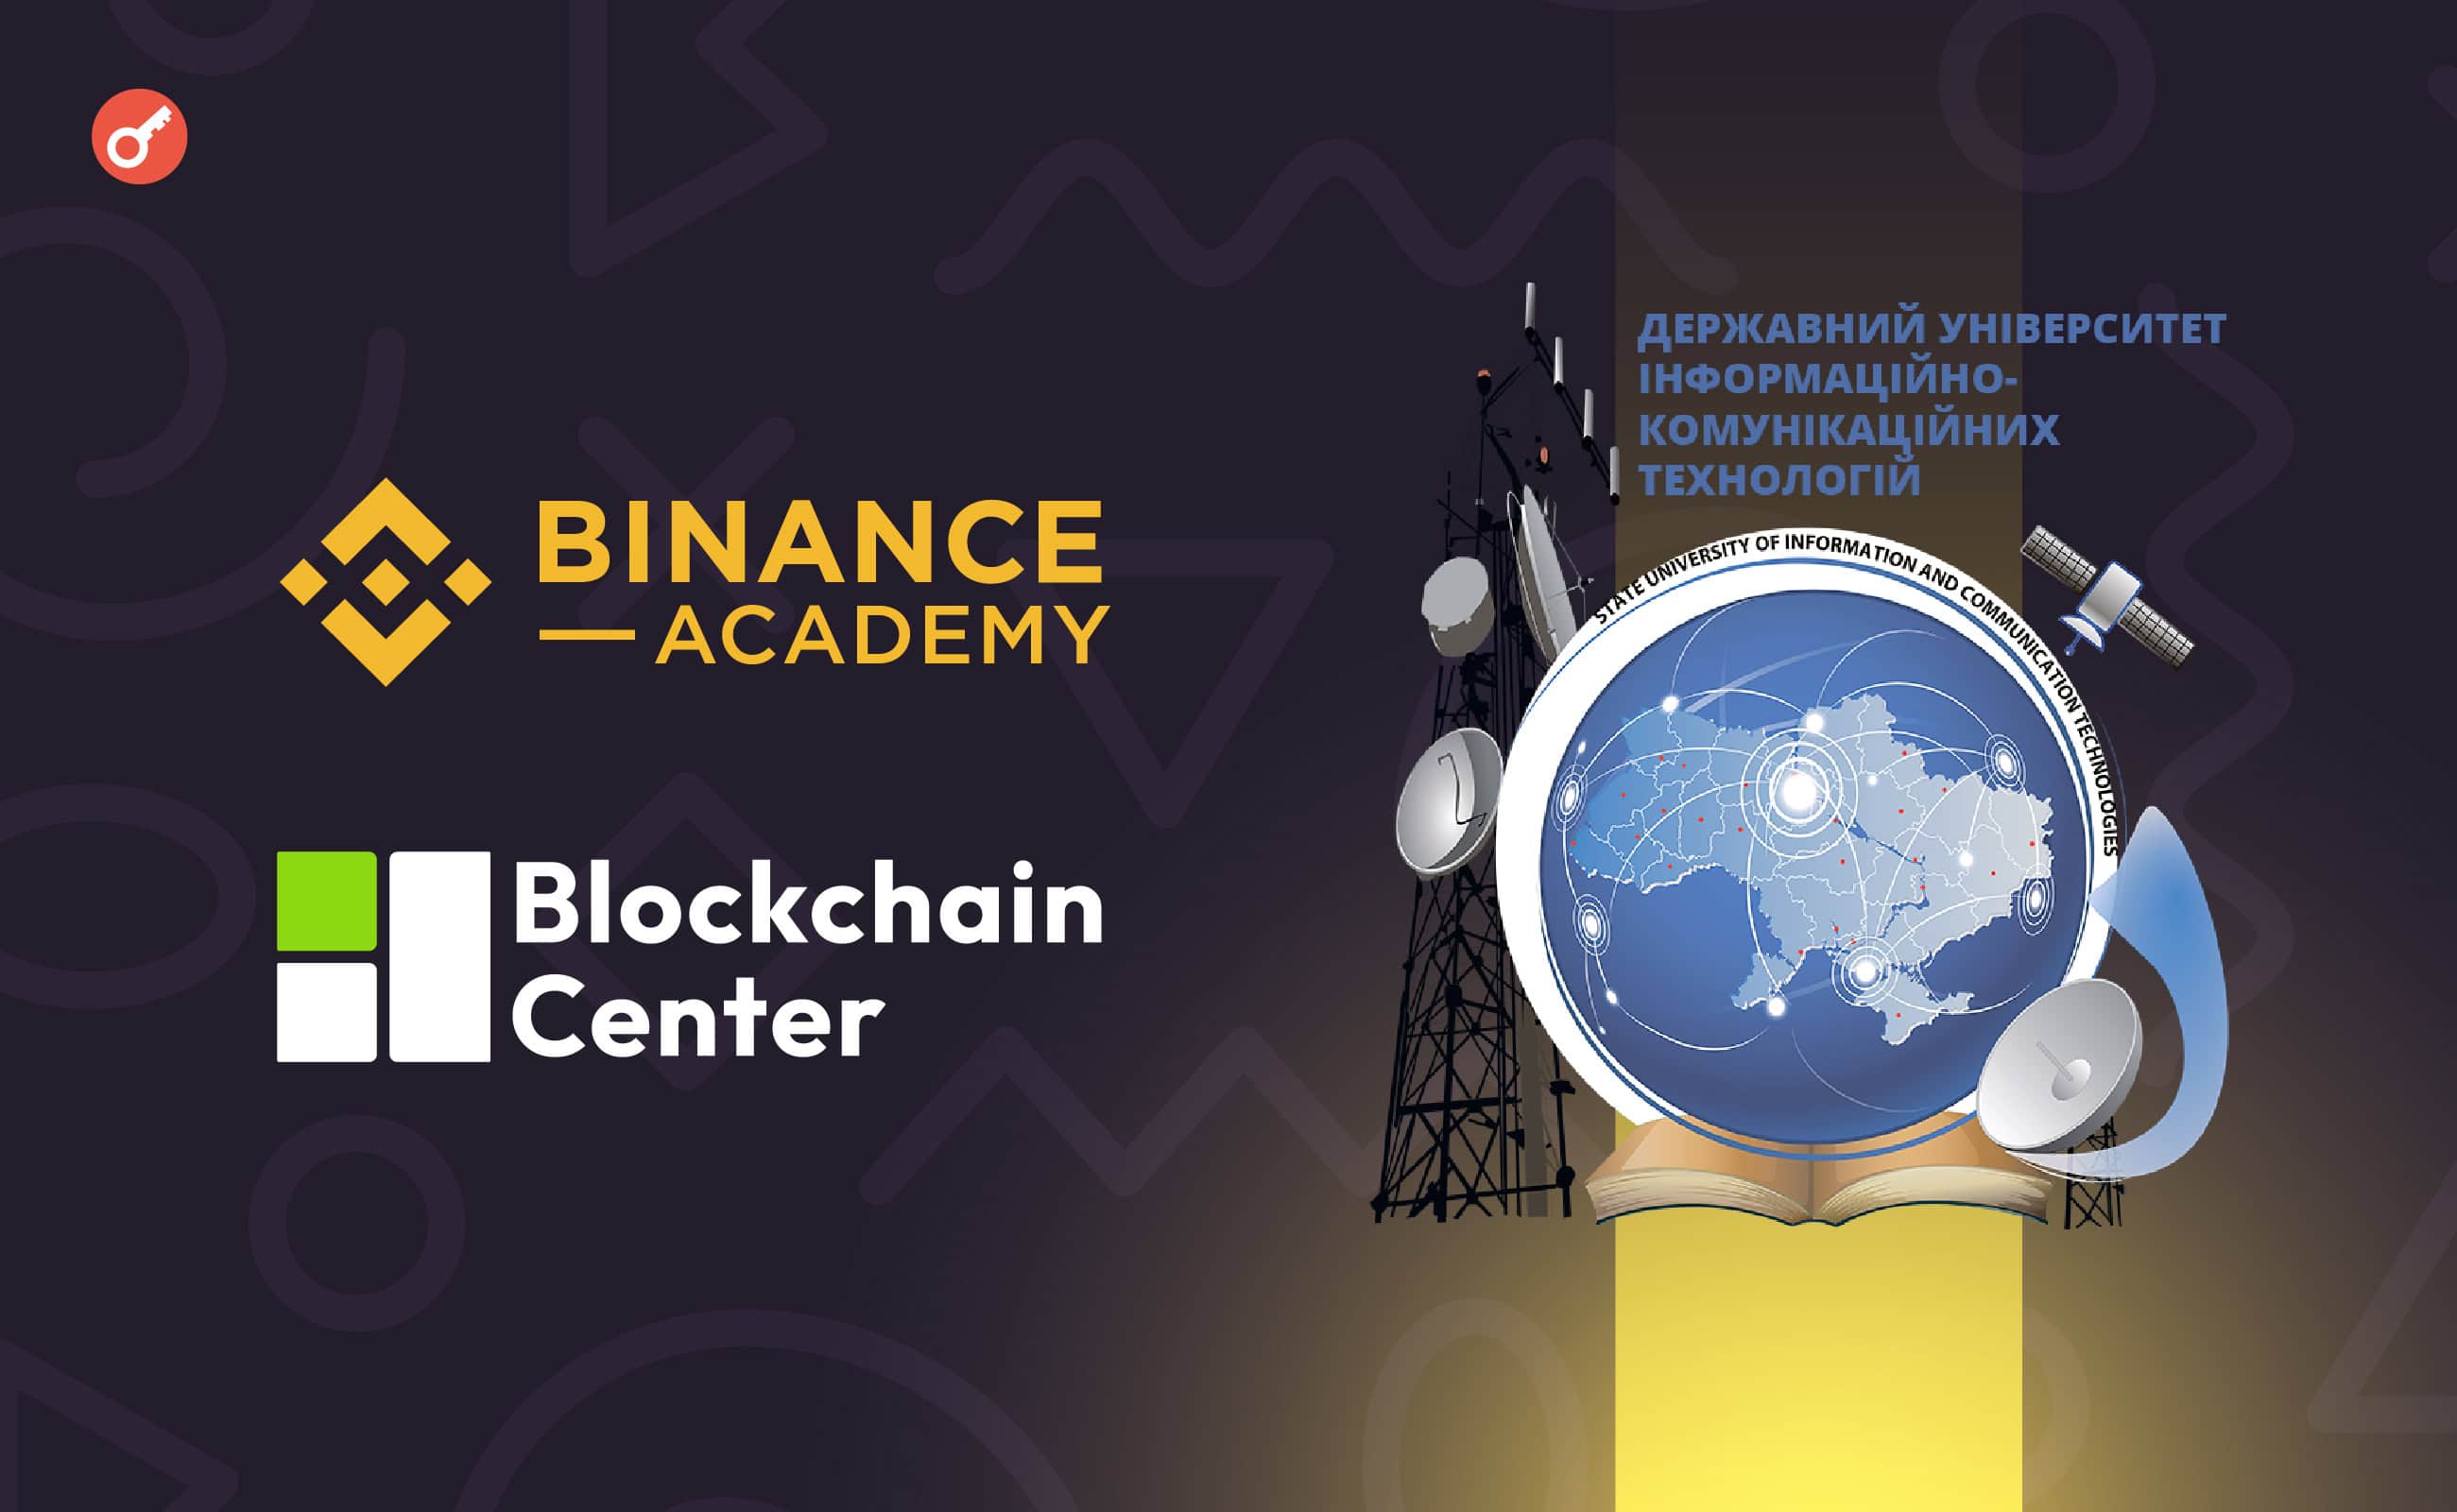 Binance Academy співпрацюватиме з Державним університетом інформаційно-комунікаційних технологій України. Головний колаж новини.